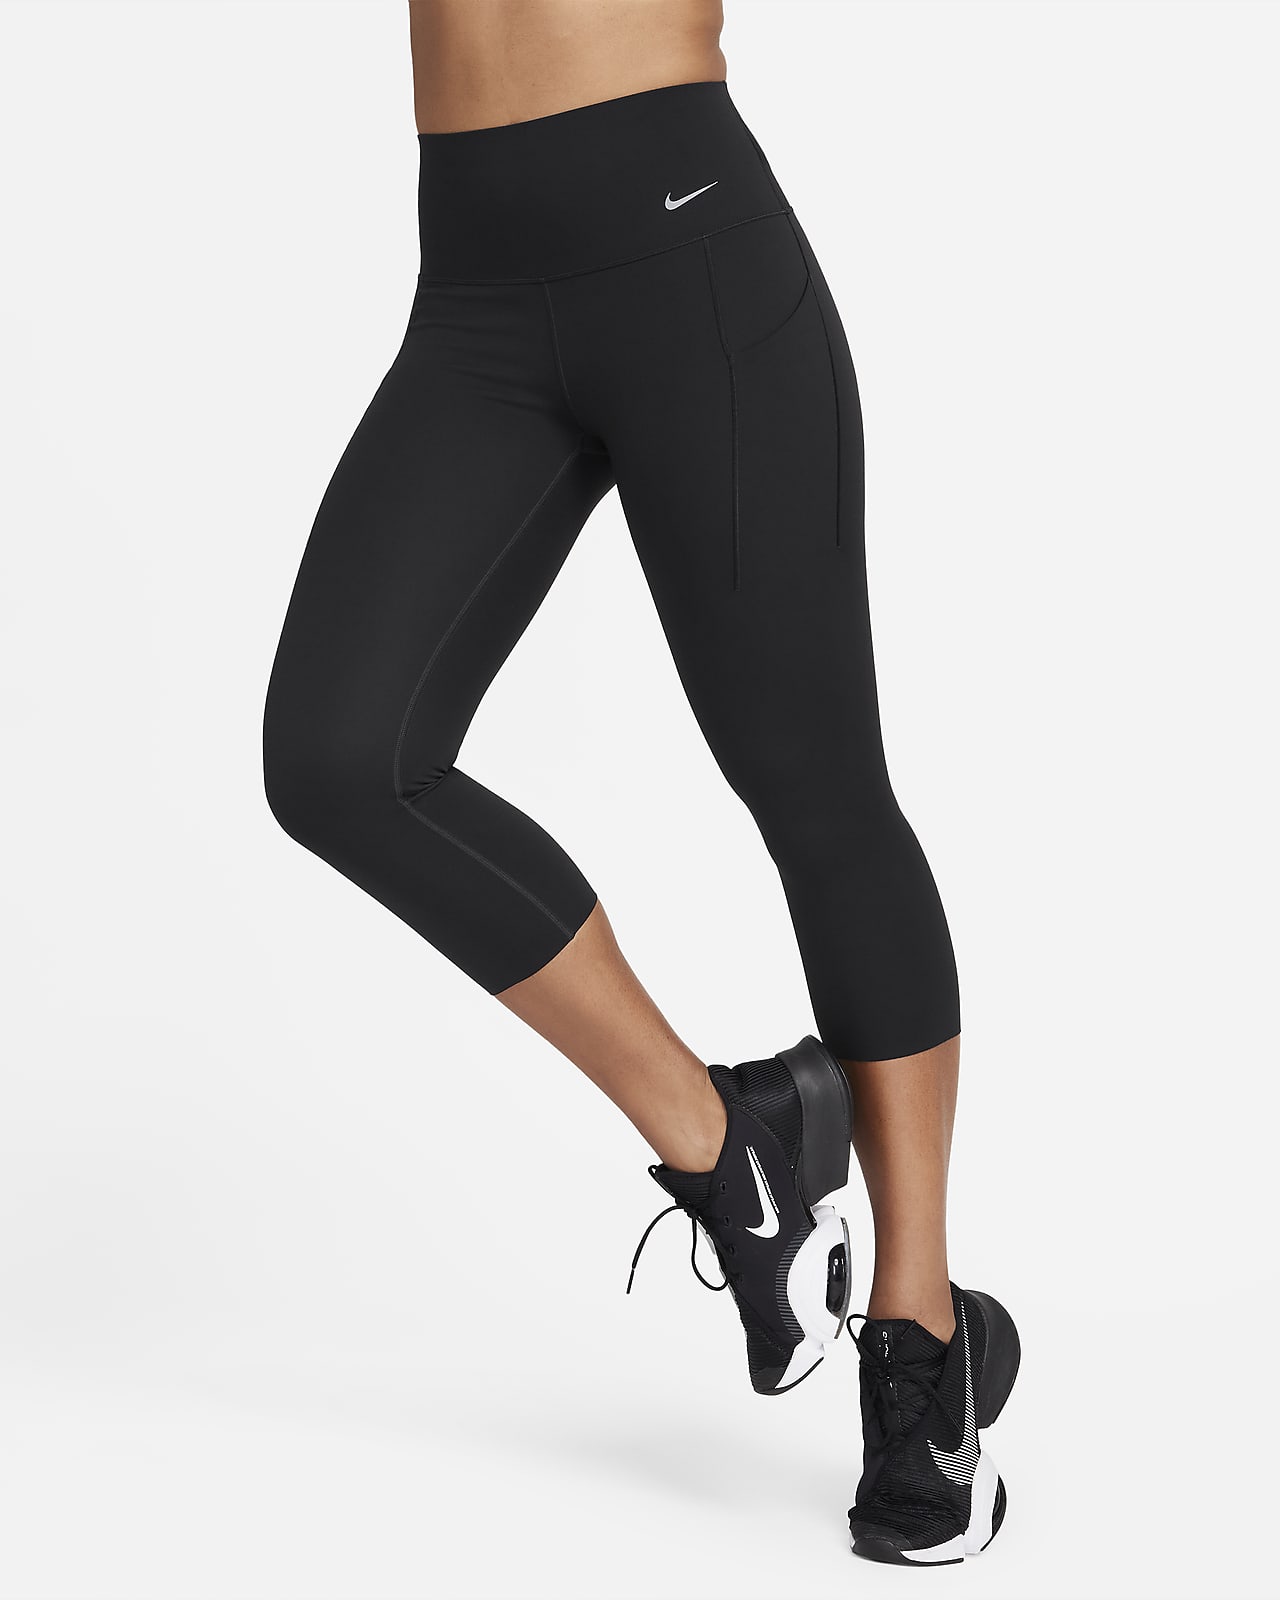 Leggings taille haute pour femme. Nike FR